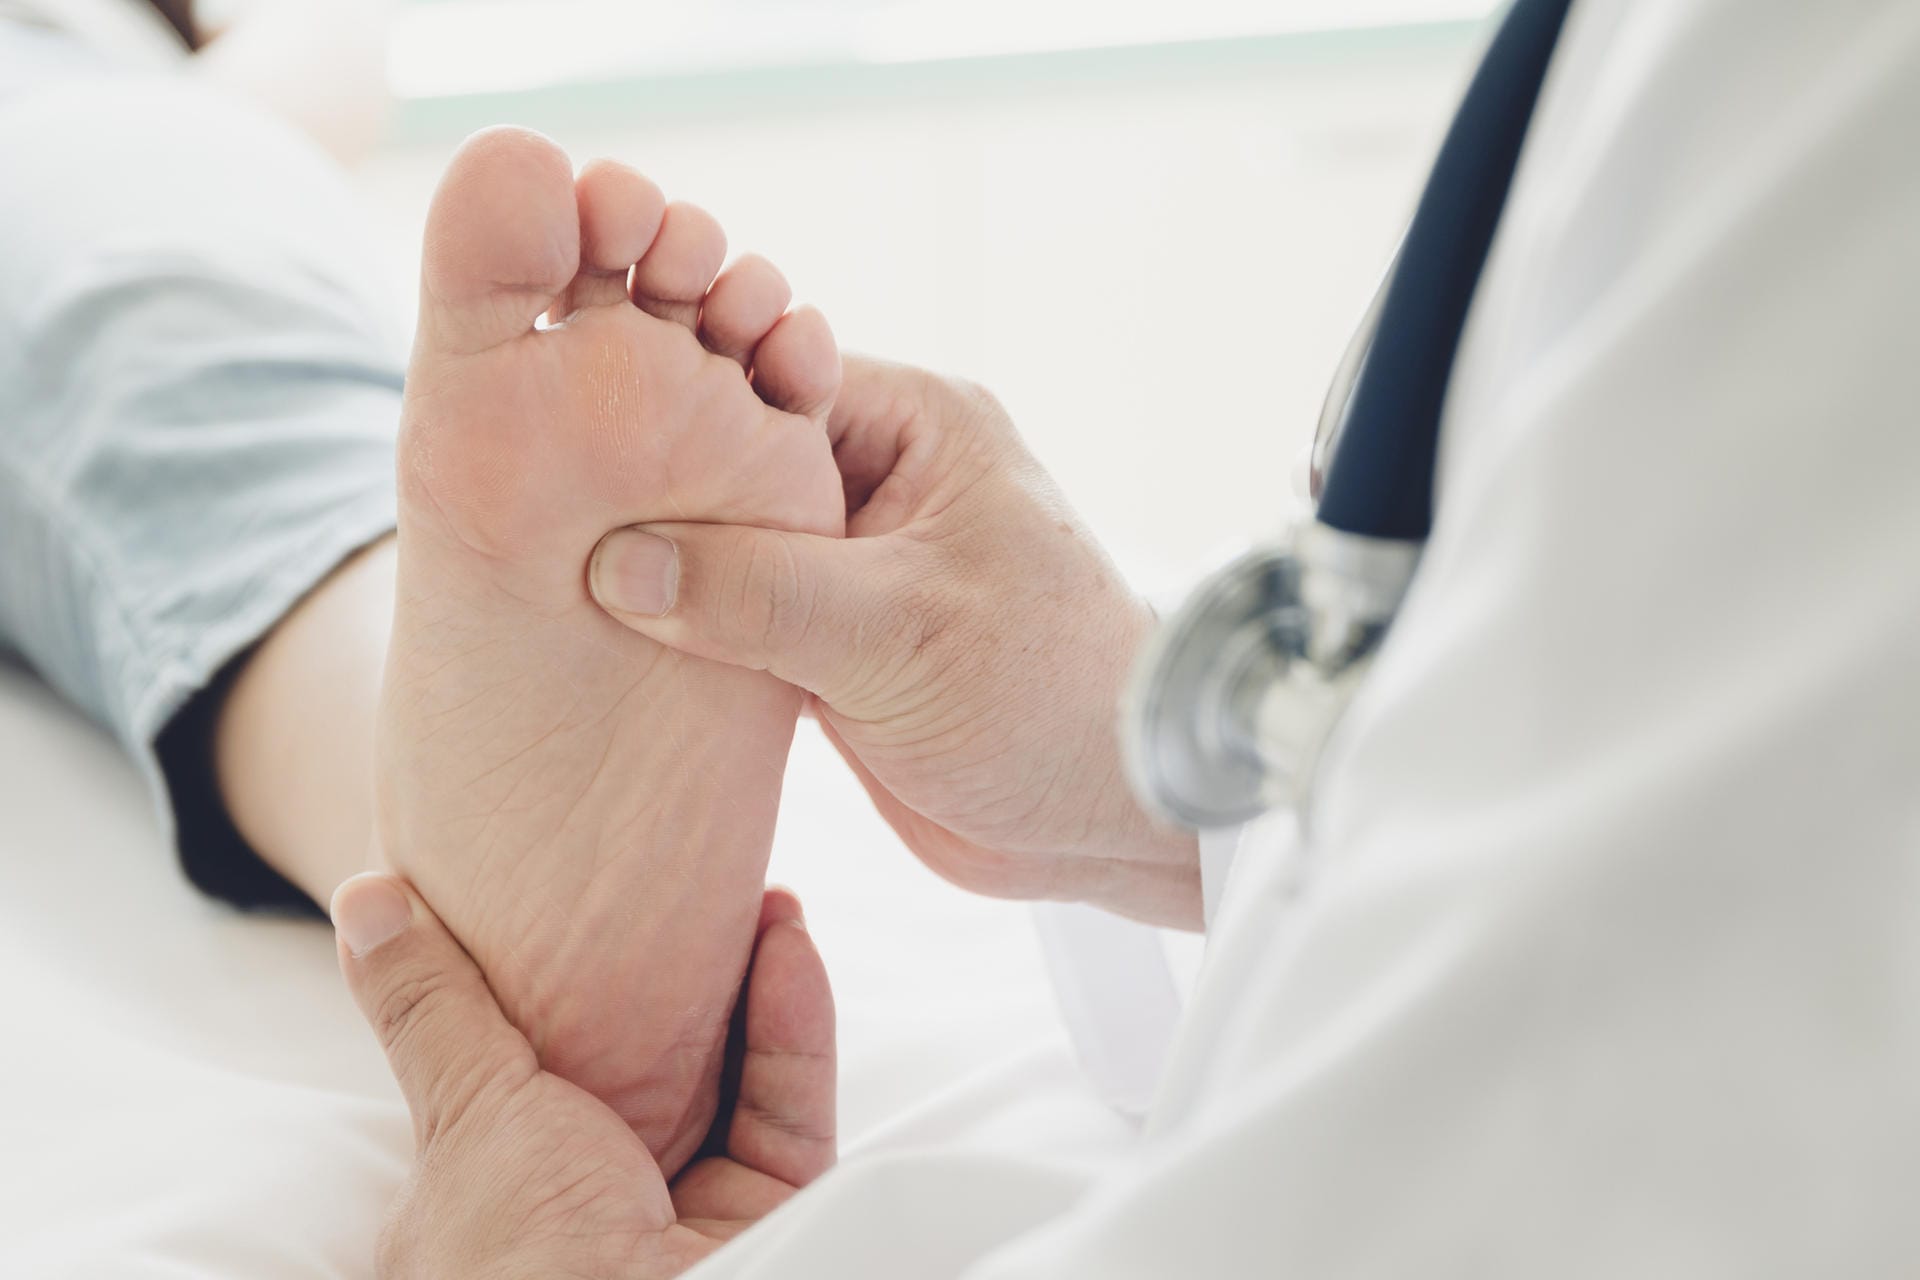 Hautirritationen: Ein Symptom, das seltener vorkommt, sind Probleme der Haut wie blaue oder rote Flecken an den Füßen.